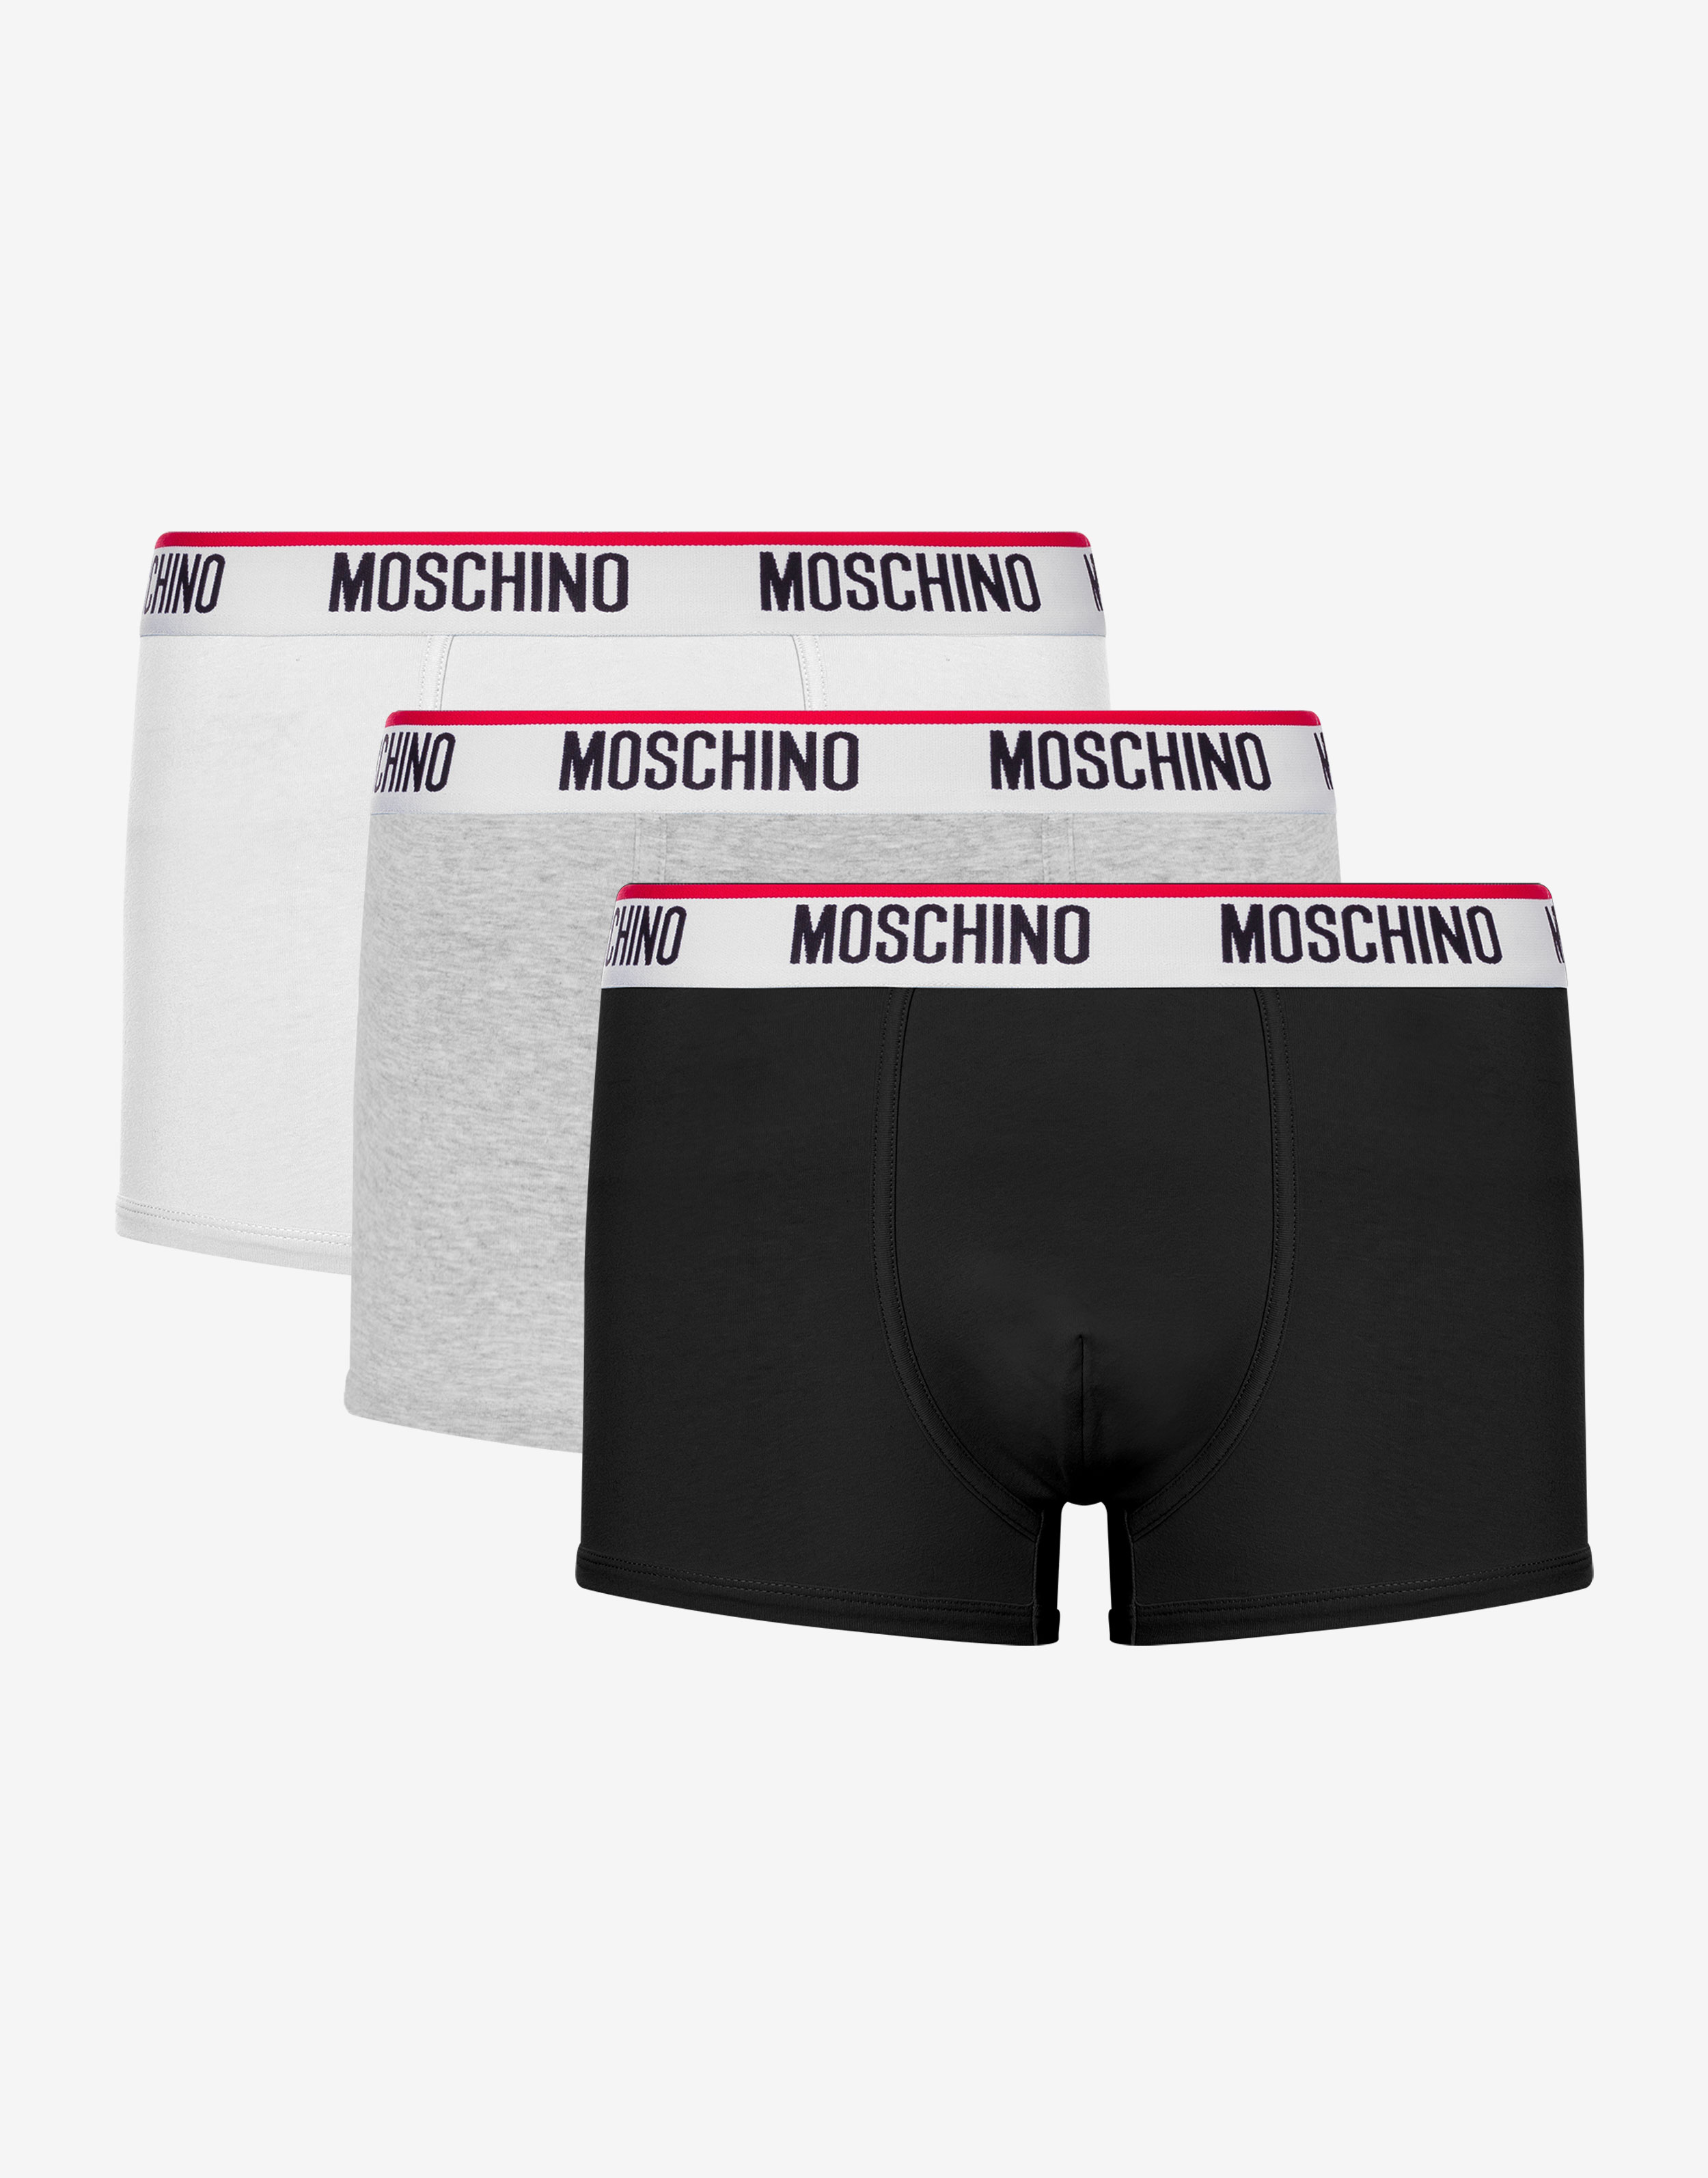 Moschino Underwear Mens Animal Print Stretch Cotton Micro Briefs